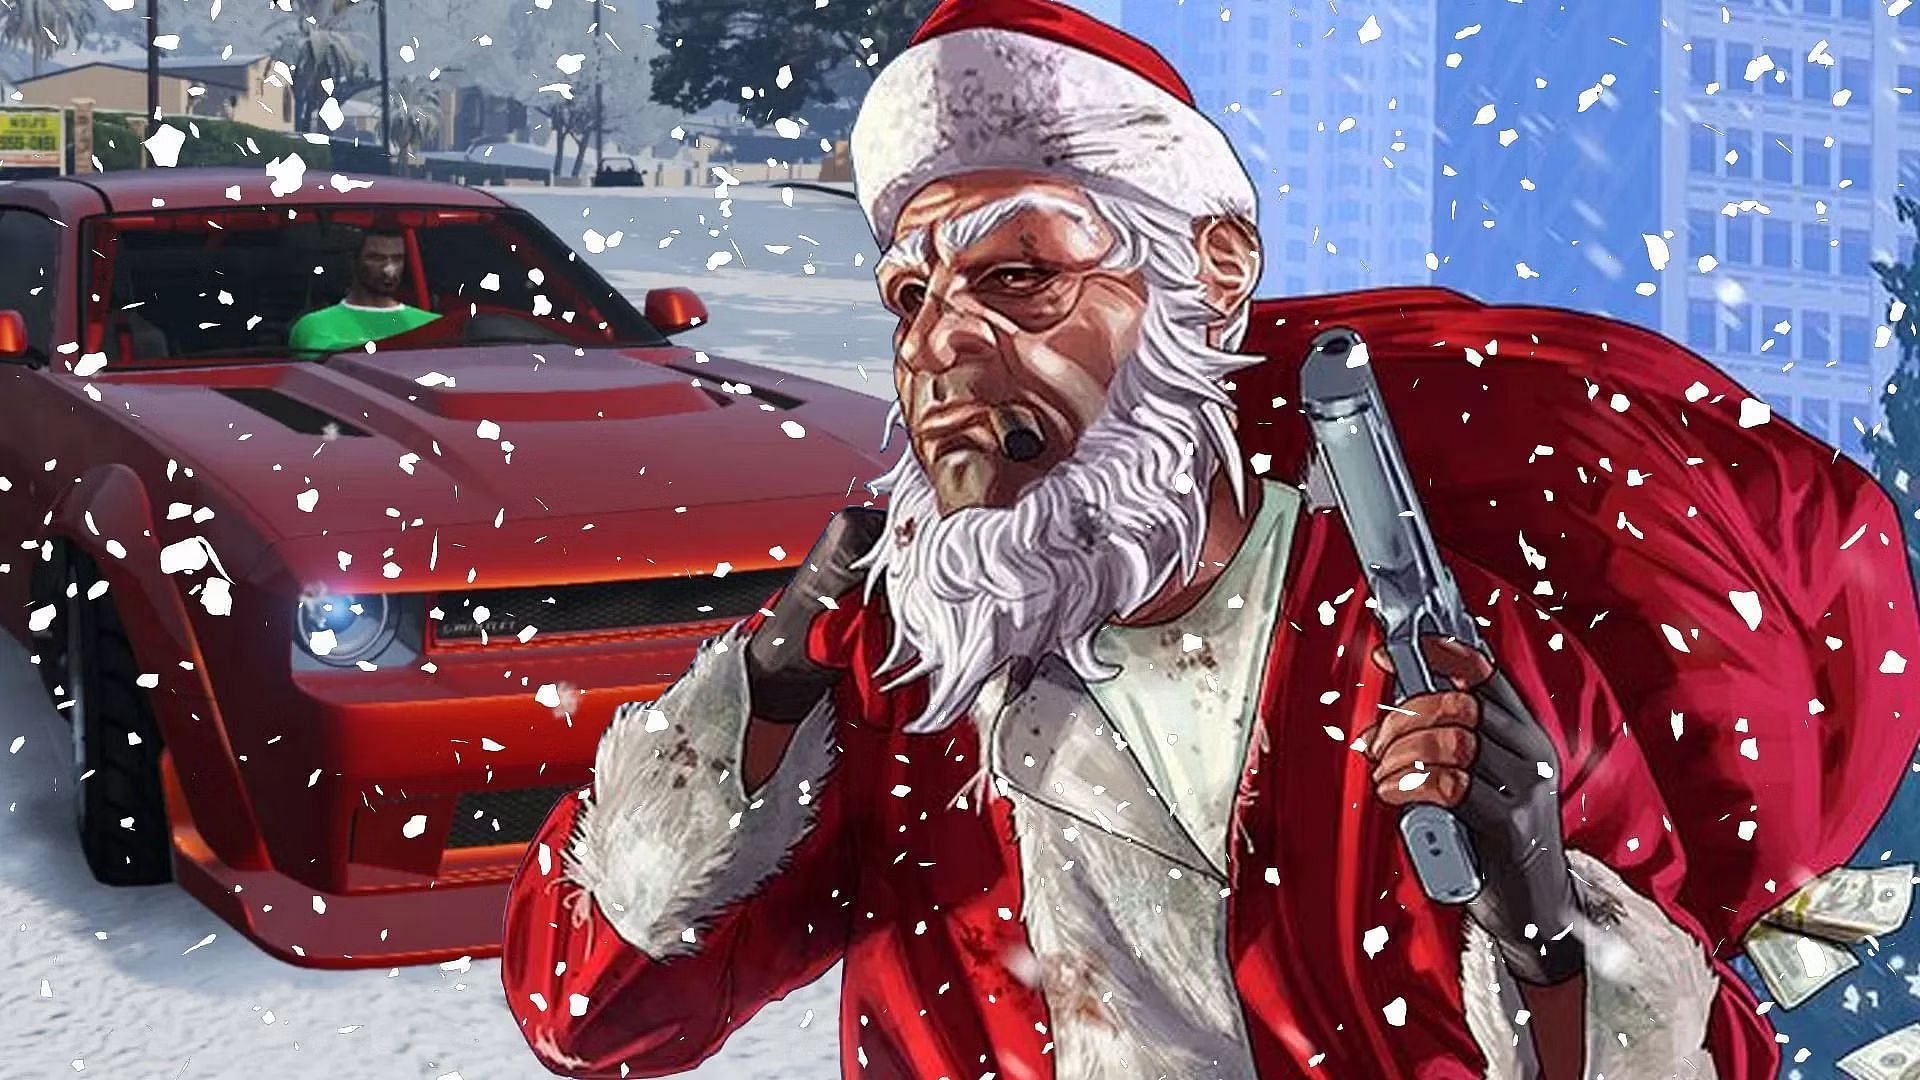 GTA Online: Jogadores tem até 30 de dezembro para resgatar itens